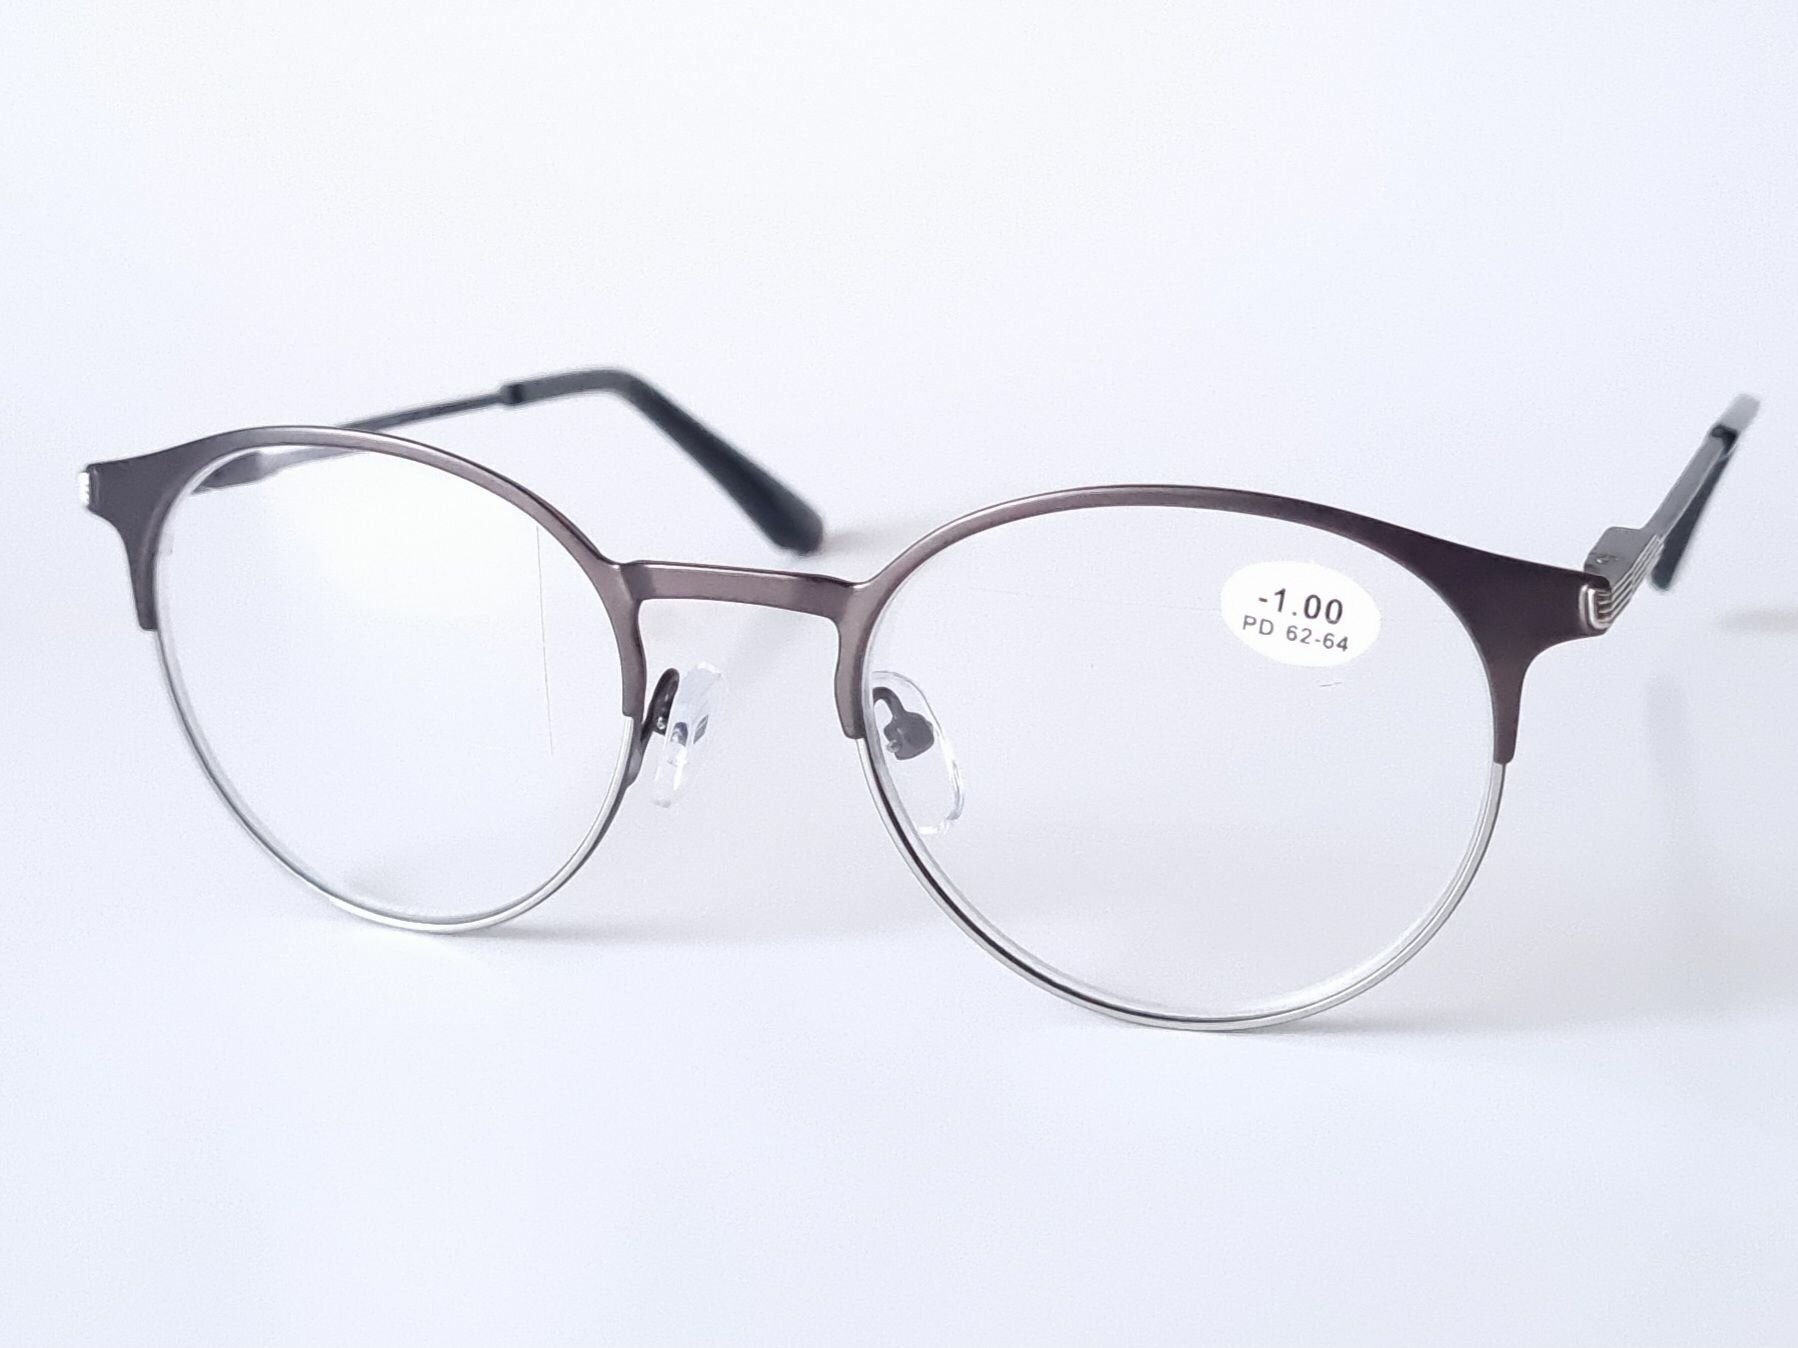 Готовые очки для коррекции зрения Focustoday / круглые готовые очки / женские / мужские очки для коррекции зрения 843 c3-2